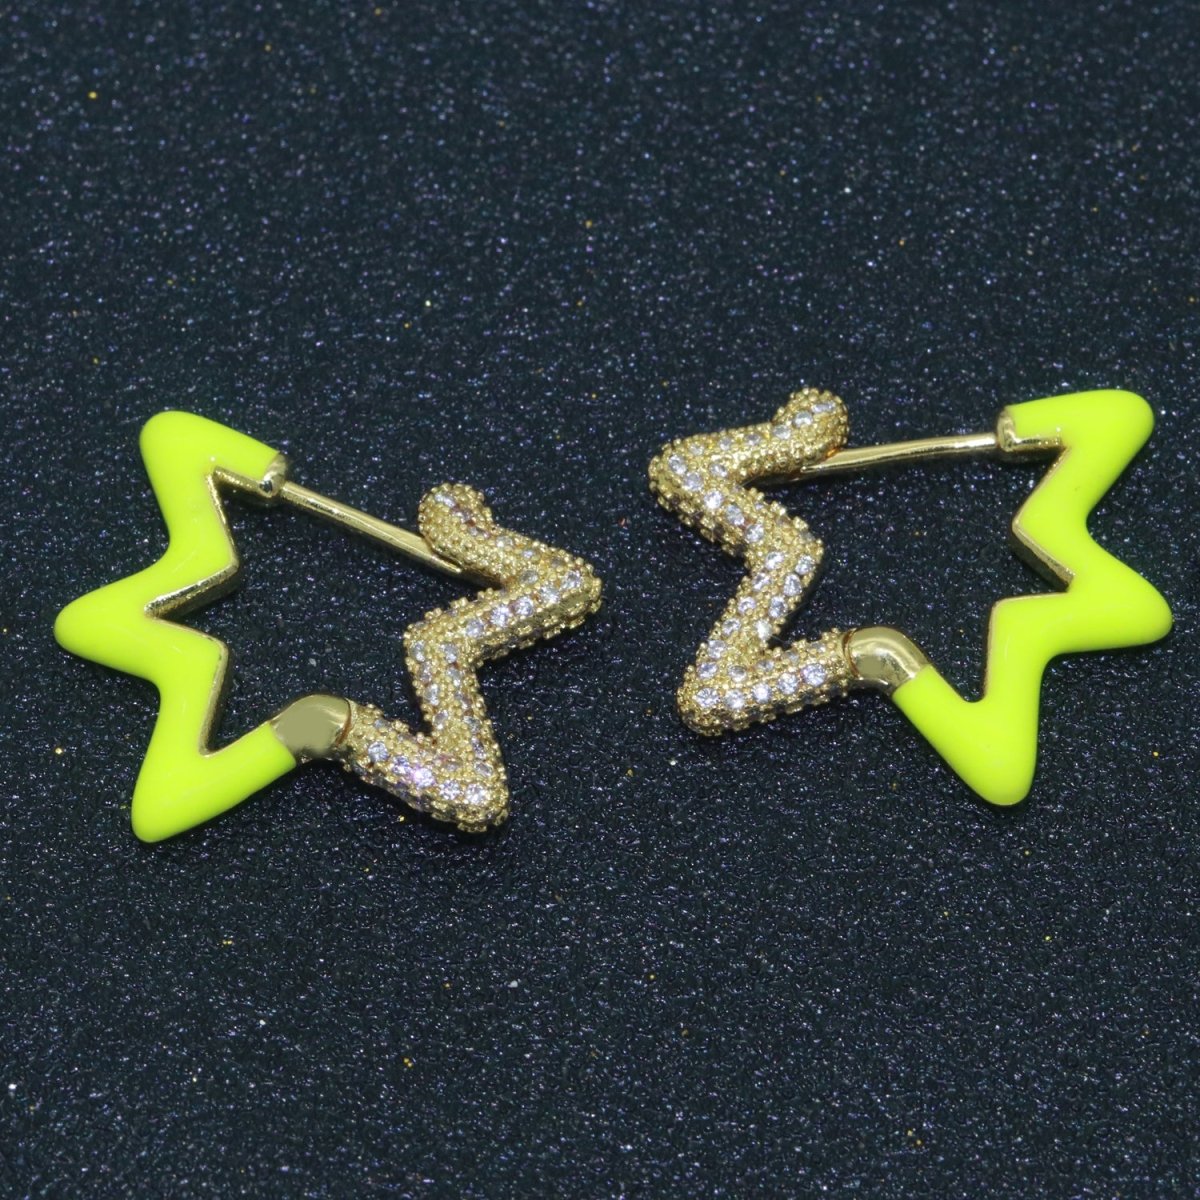 Colorful Hoop Earrings Star Shape Earrings for Women Teen Girls Trendy Y2k Earrings Cute Candy Micro Pave Hoop Earrings for Jewelry Gifts T-102 ~ T-111 - DLUXCA